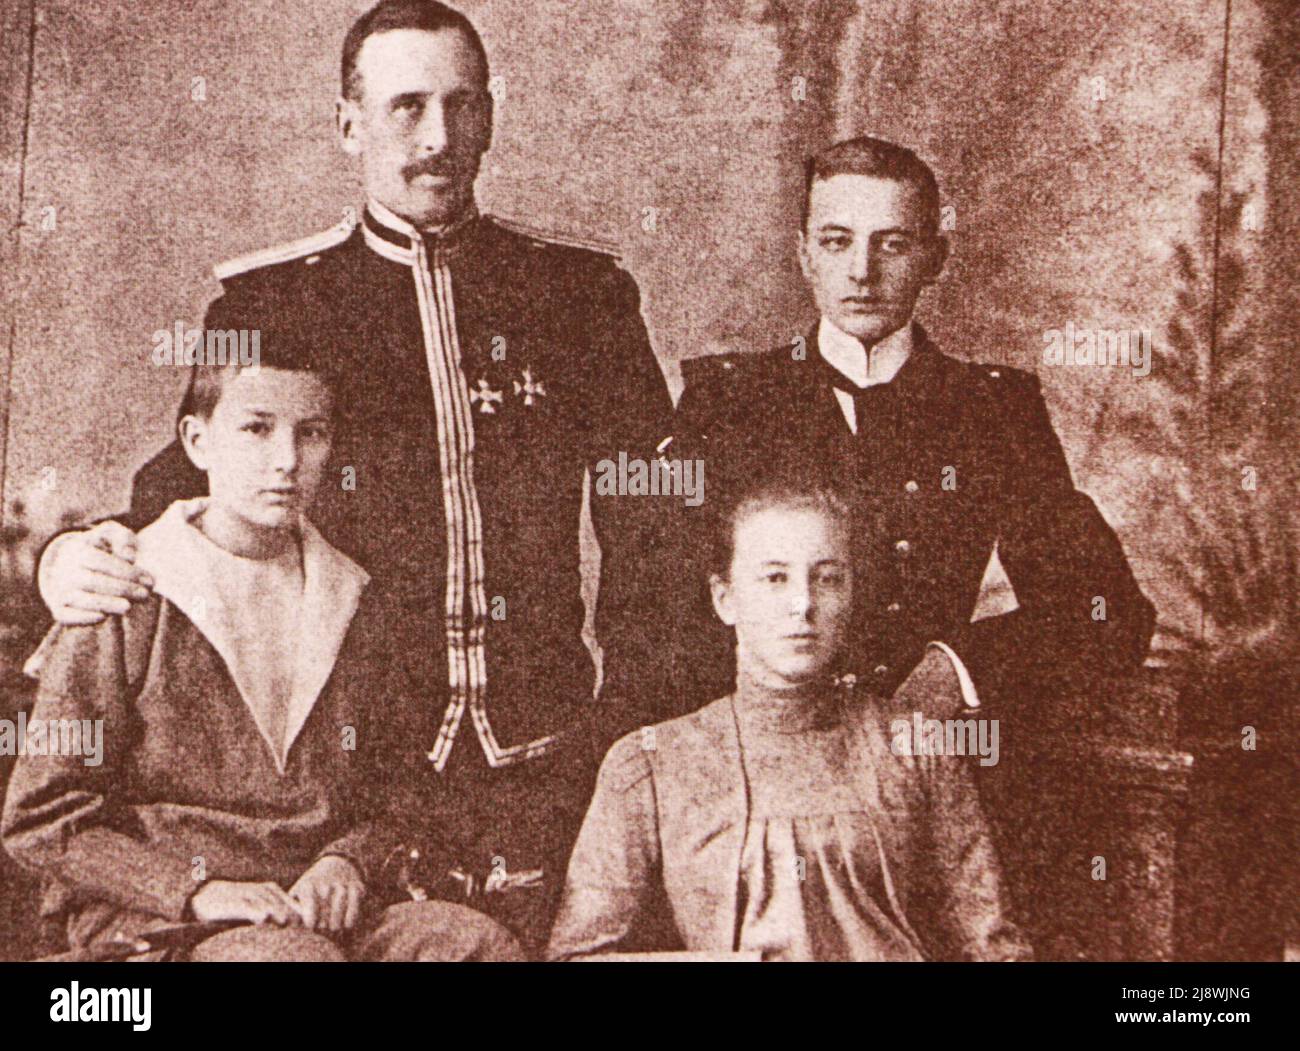 El comandante de la división de Crimea del ejército ruso - el conde Fedor Arturovich Keller con su familia. Foto de principios del siglo 20th. Foto de stock